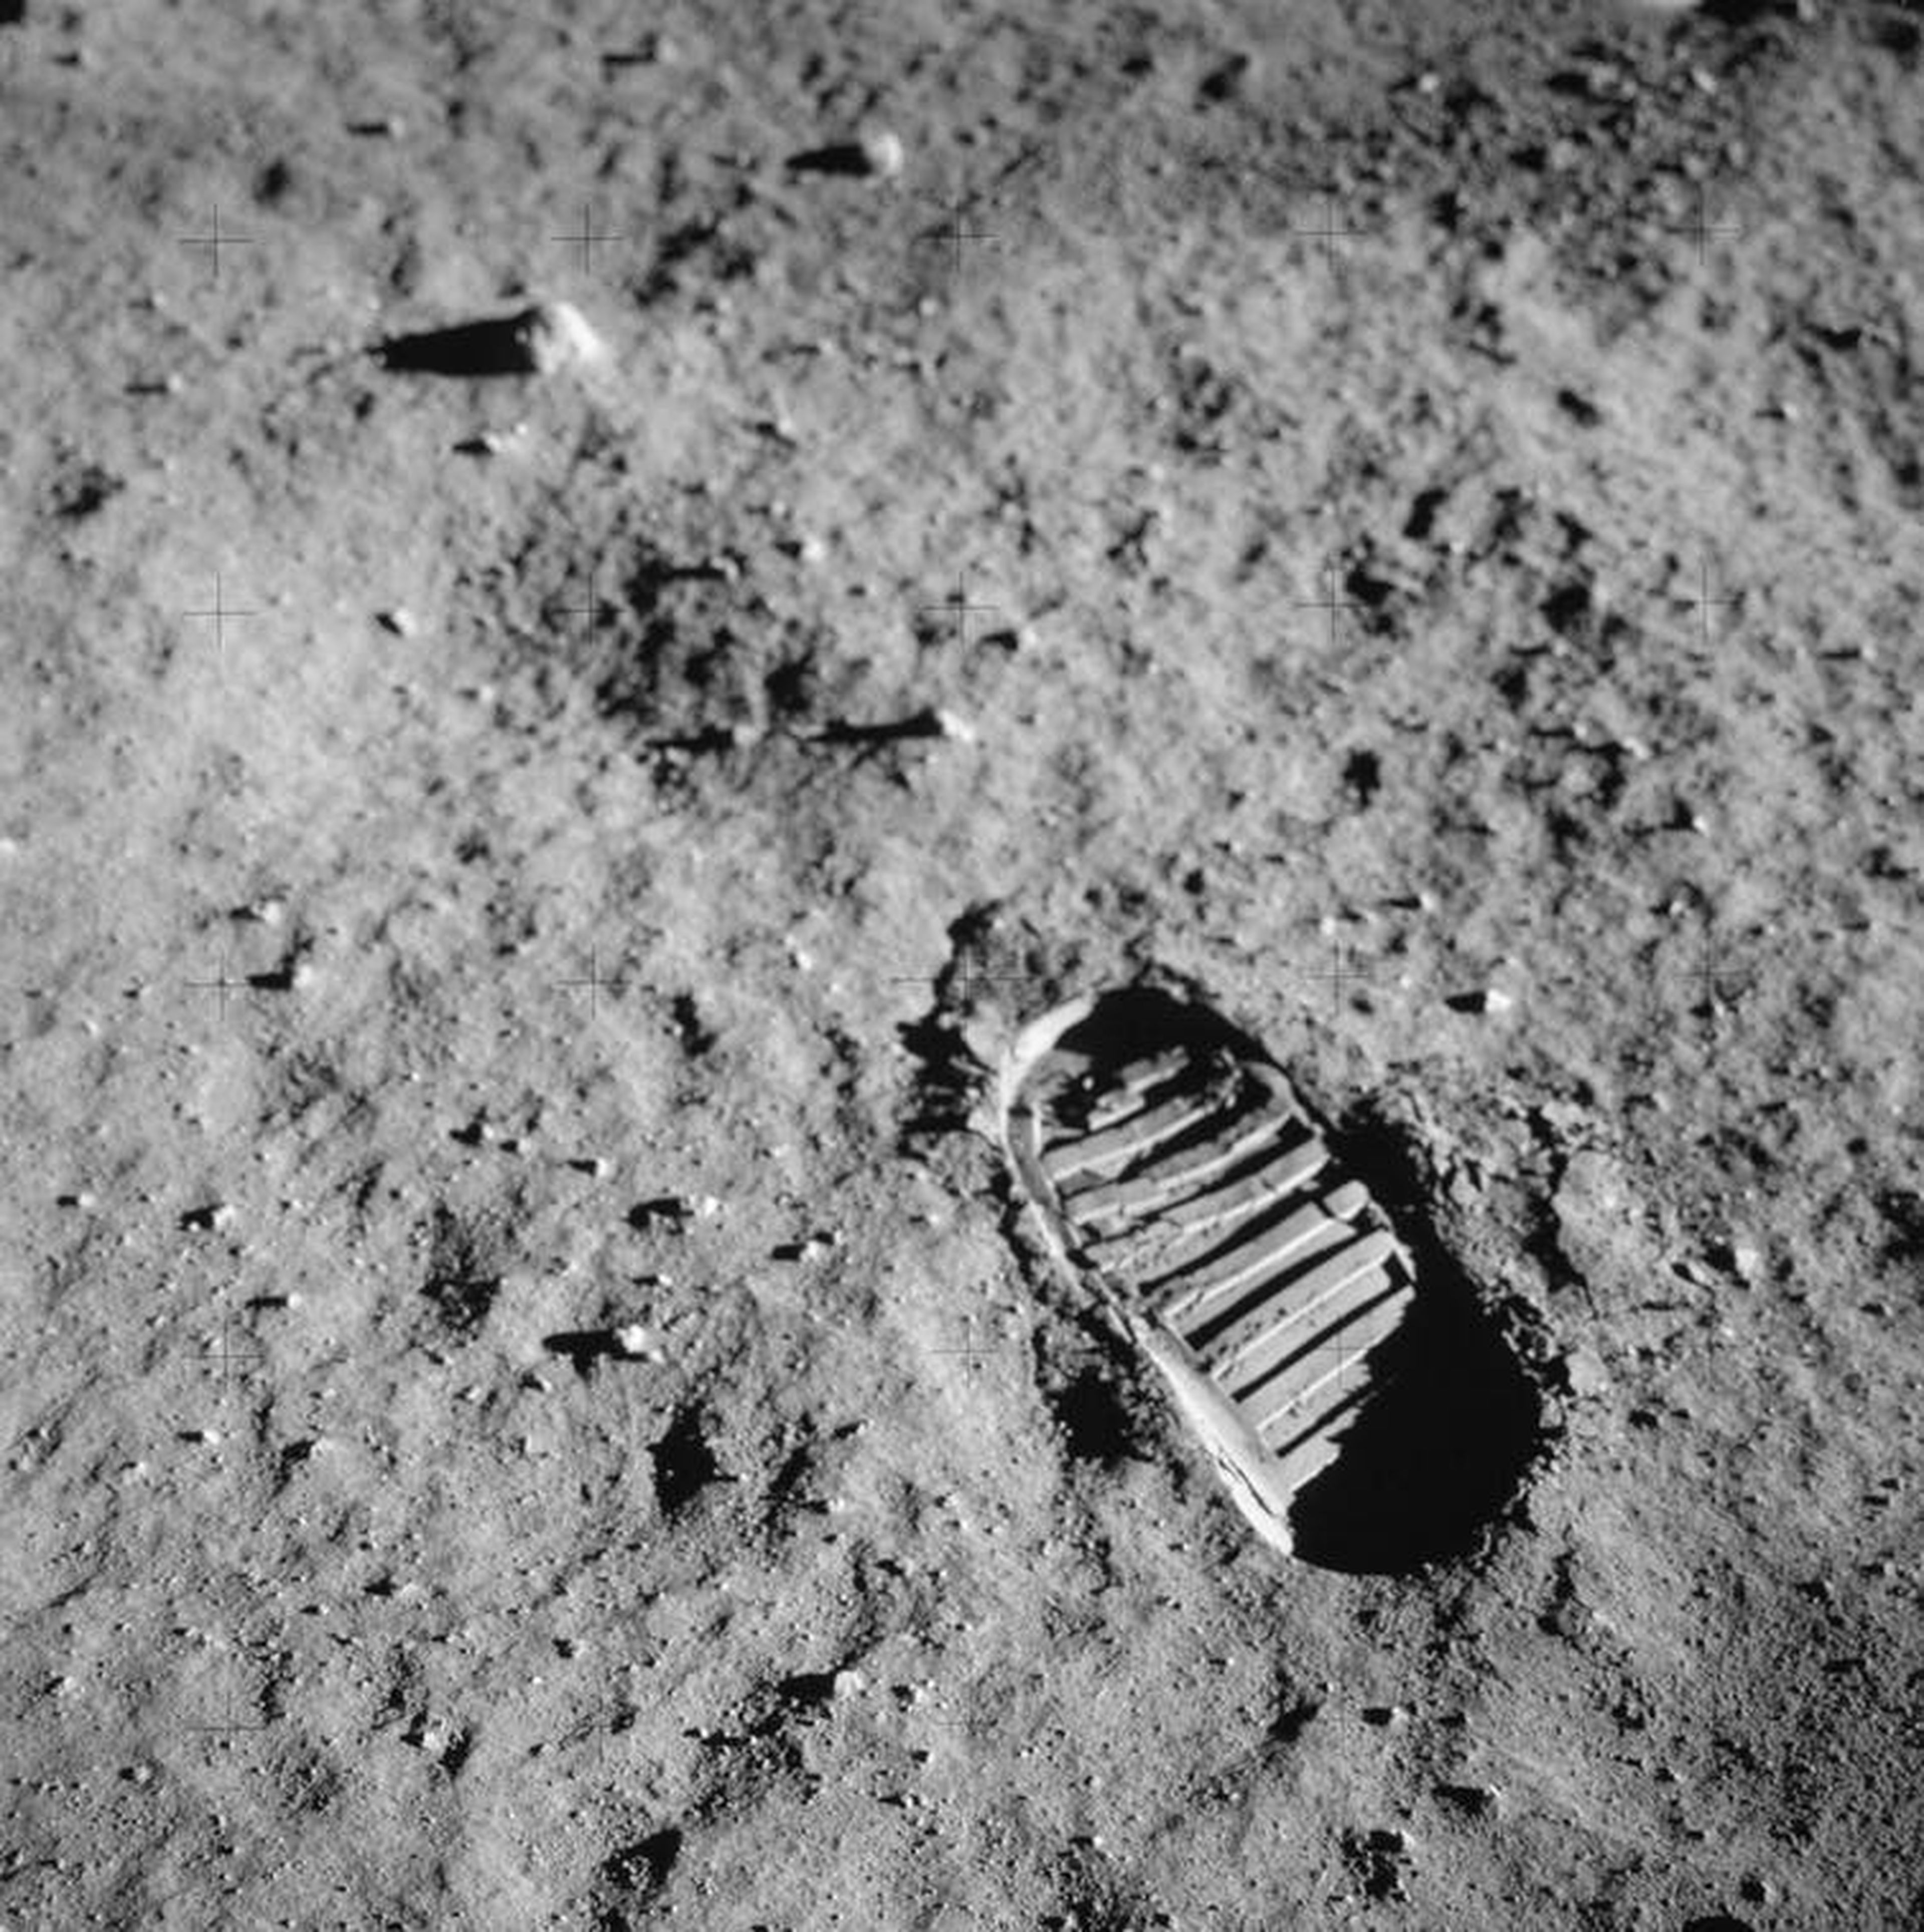 Plano corto de la huella de un astronauta en el suelo lunar, fotografiada durante la actividad extravehicular del Apolo 11 en la Luna el 20 de julio de 1969.